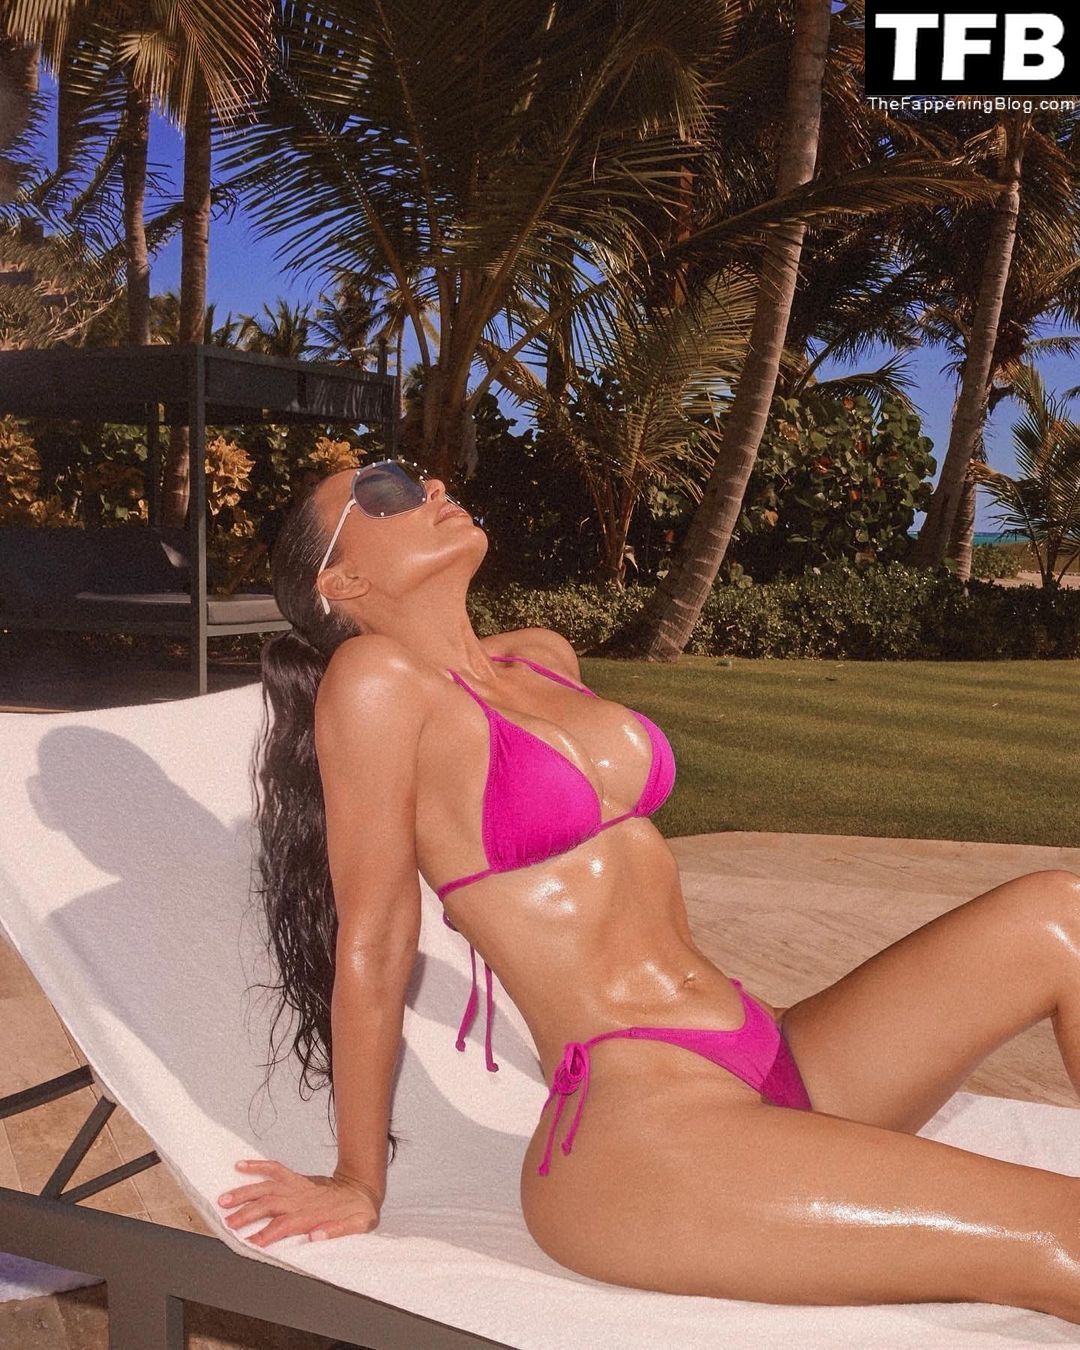 Kim-Kardashian-Sexy-The-Fappening-Blog-3-2.jpg